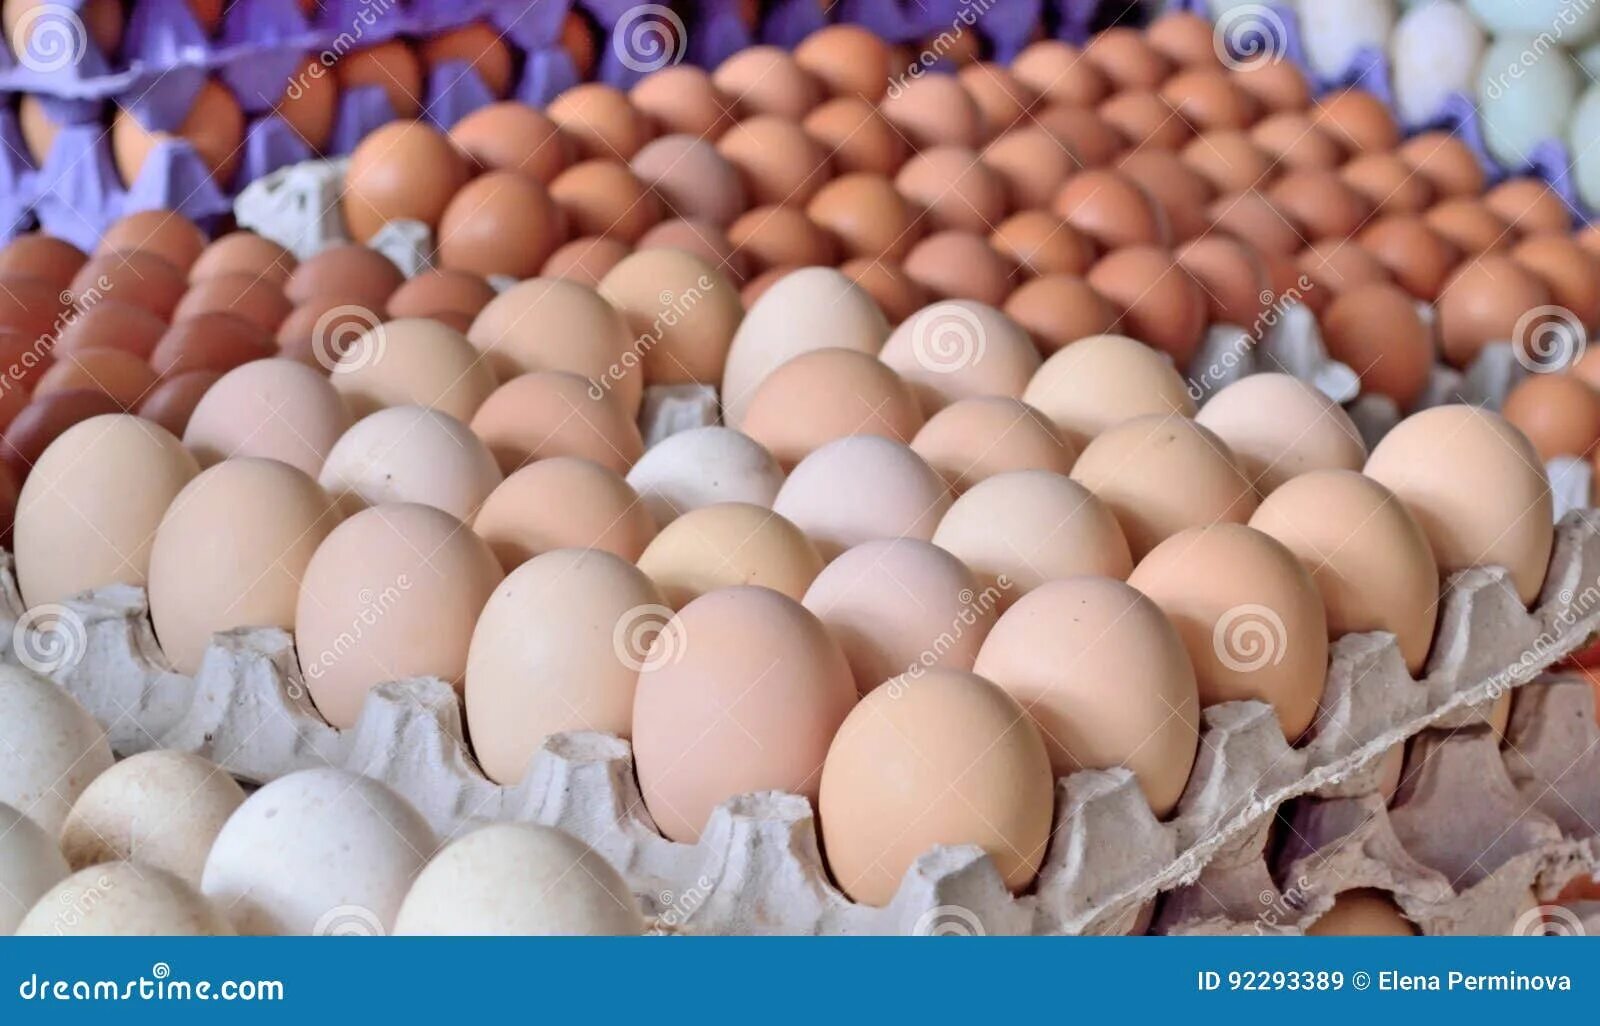 Сонник много куриных. Яйцо куриное. Куриные яйца в рынке. Яйцо домашнее куриное. Склад яиц.